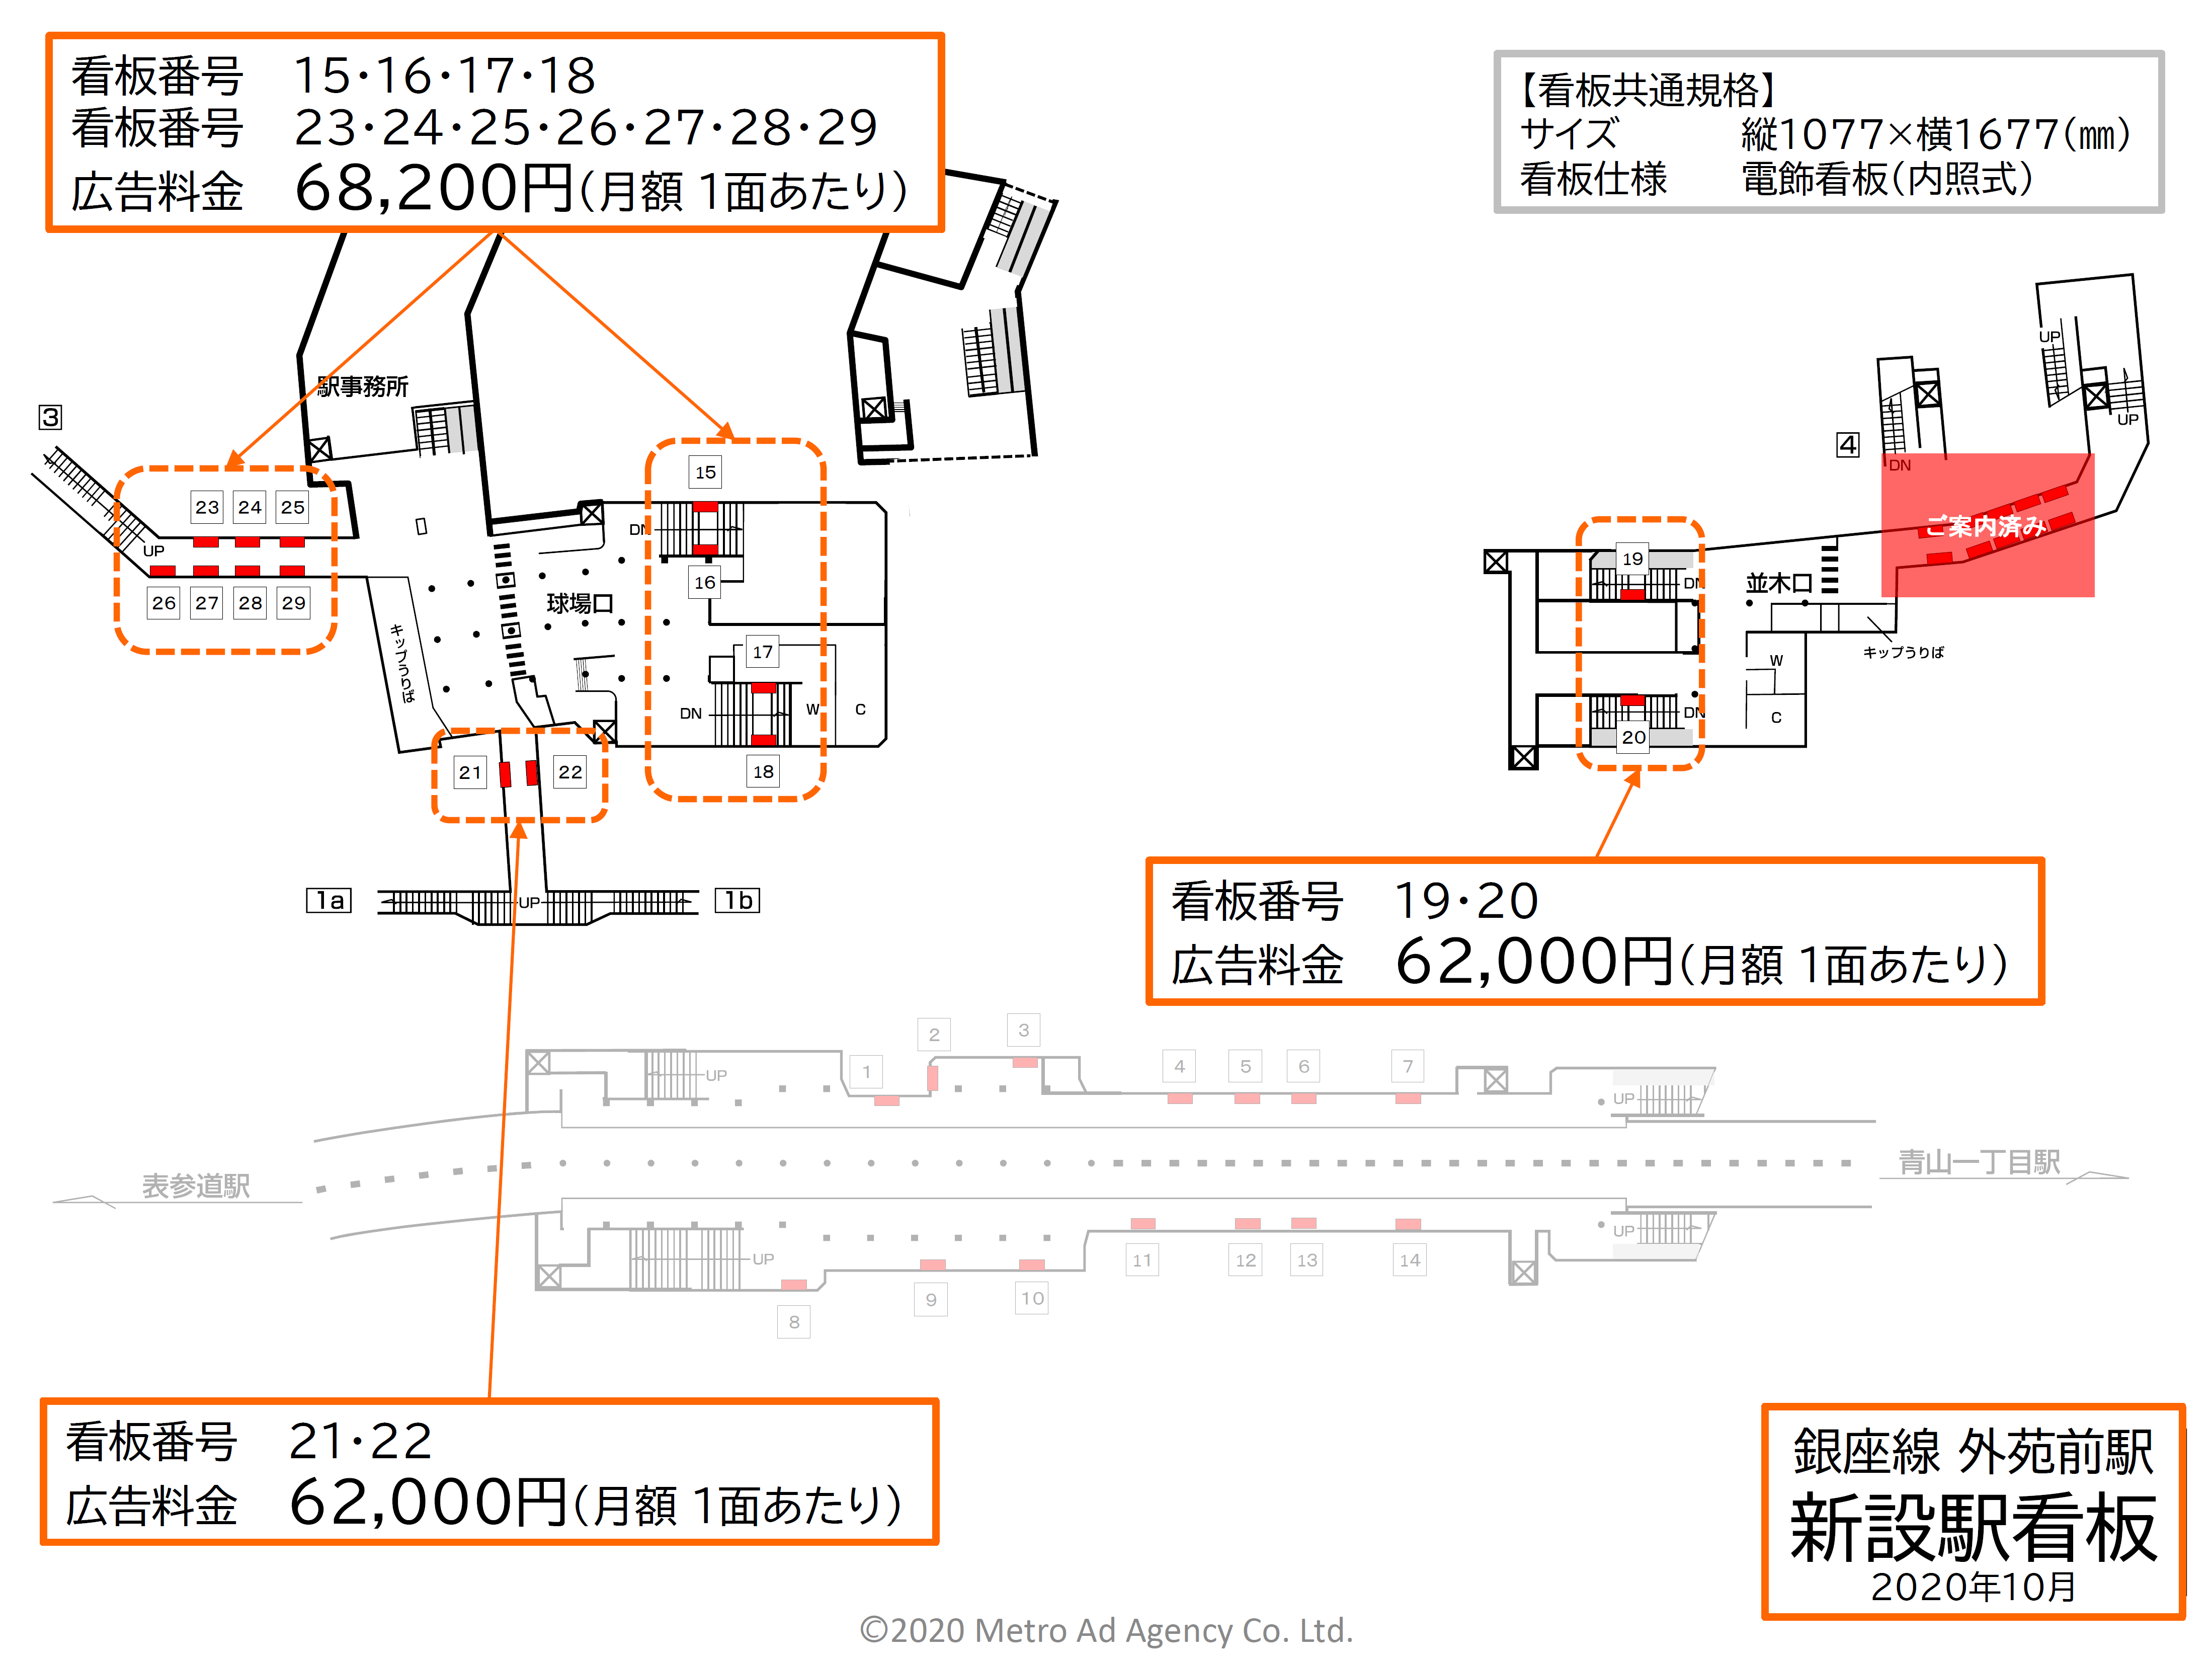 東京メトロ外苑前駅の新設駅看板の位置図です。改札周辺と階段に設置されている看板の位置を印しています。